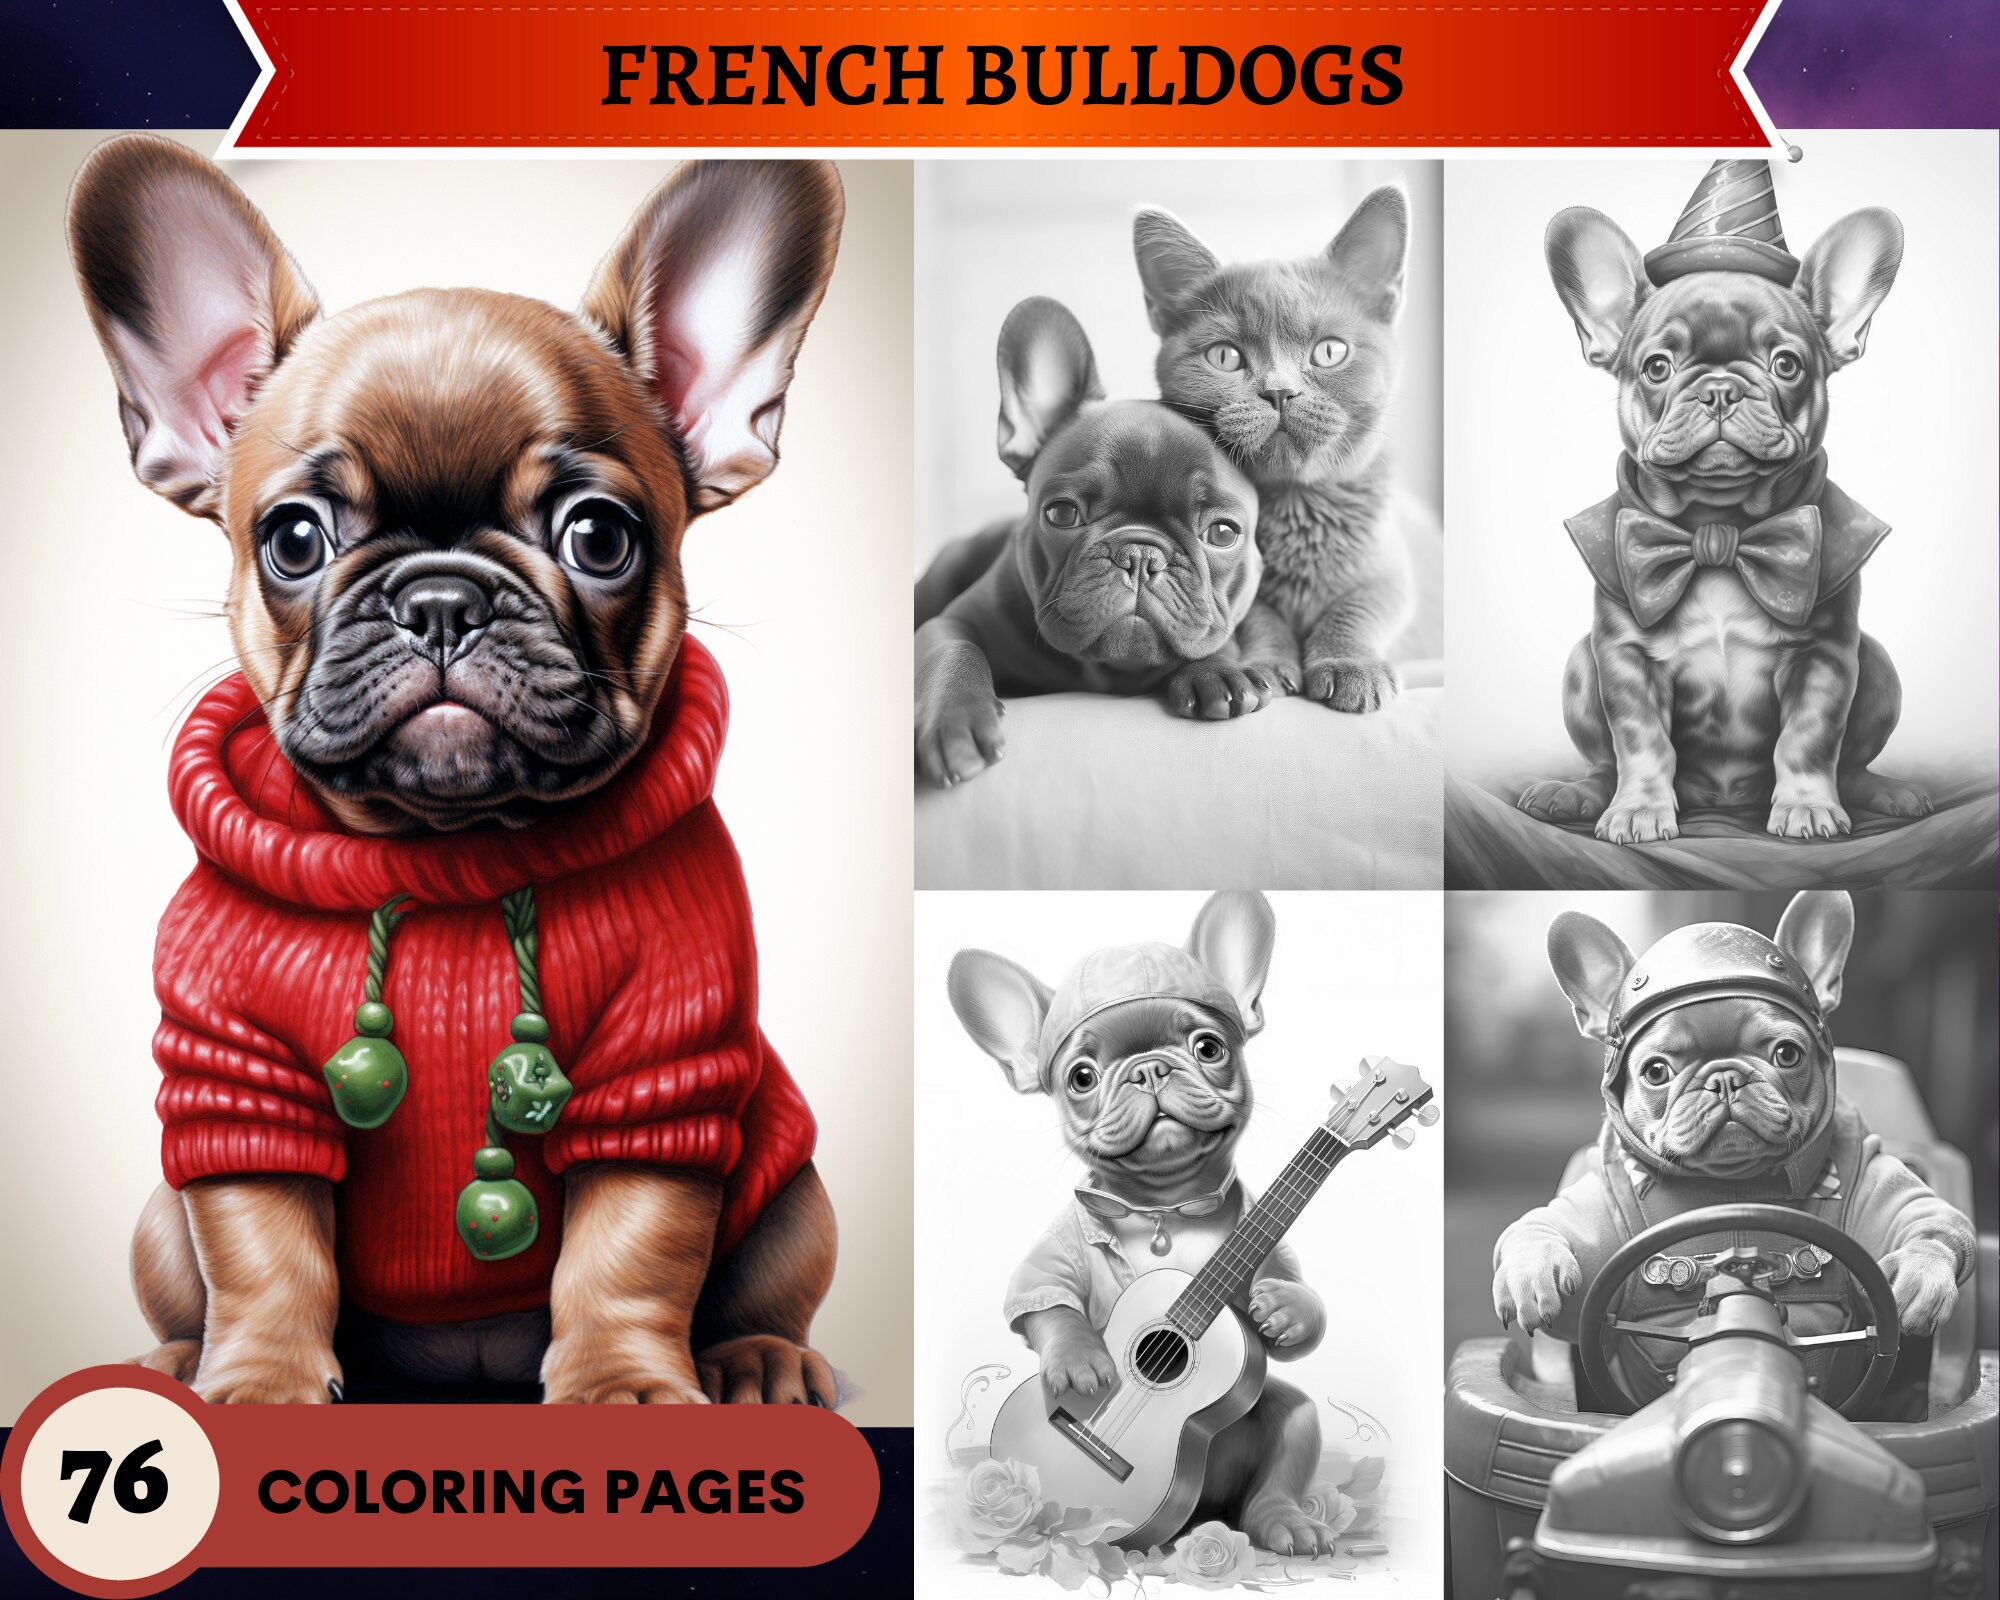 Pãginas para colorear de bulldog francãs en escala de grises cachorros de perros pãginas para colorear para adultos imprimibles descargar ilustraciãn en escala de grises